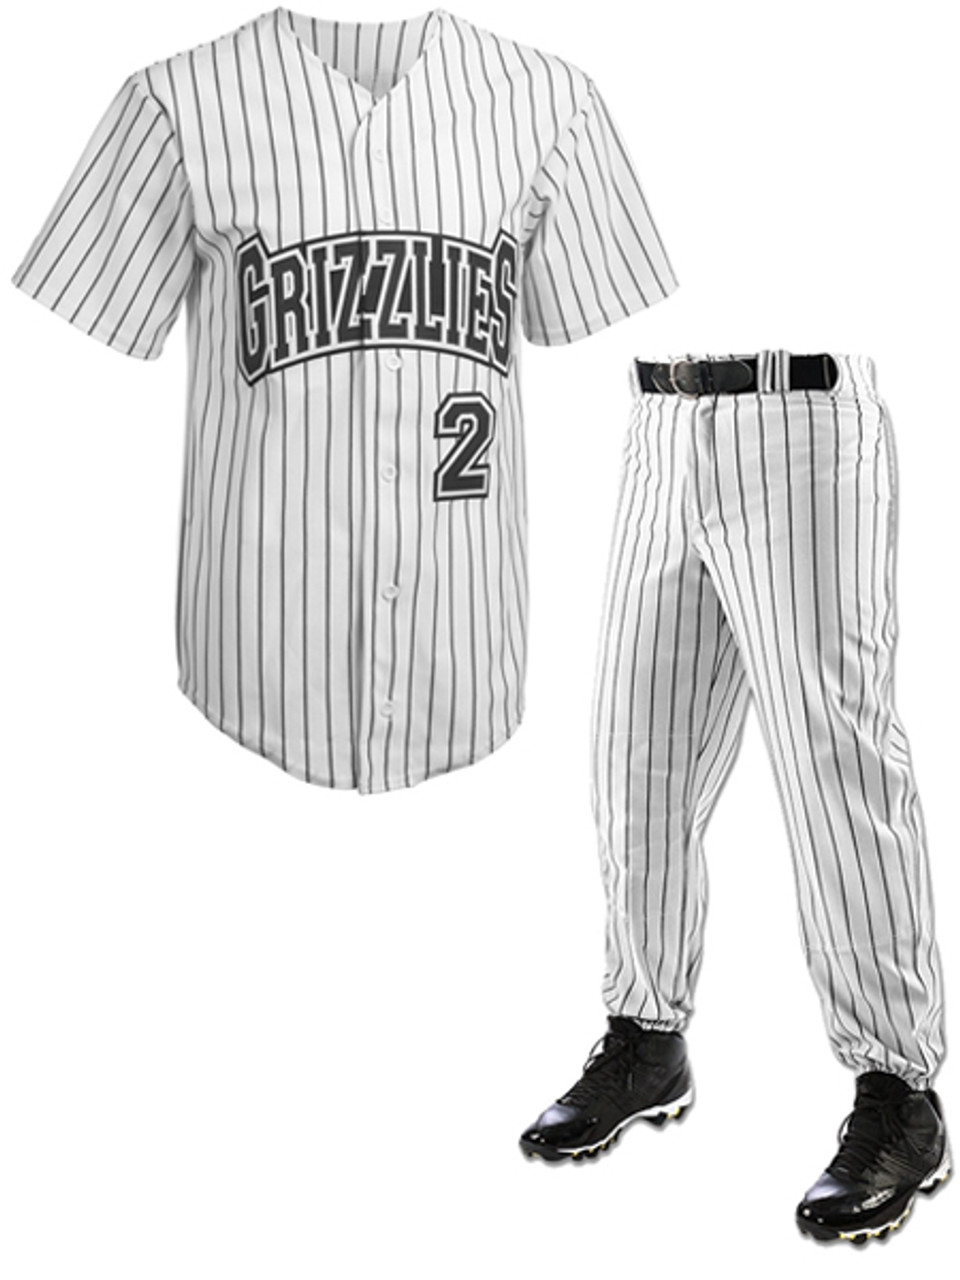 grizzlies baseball jersey